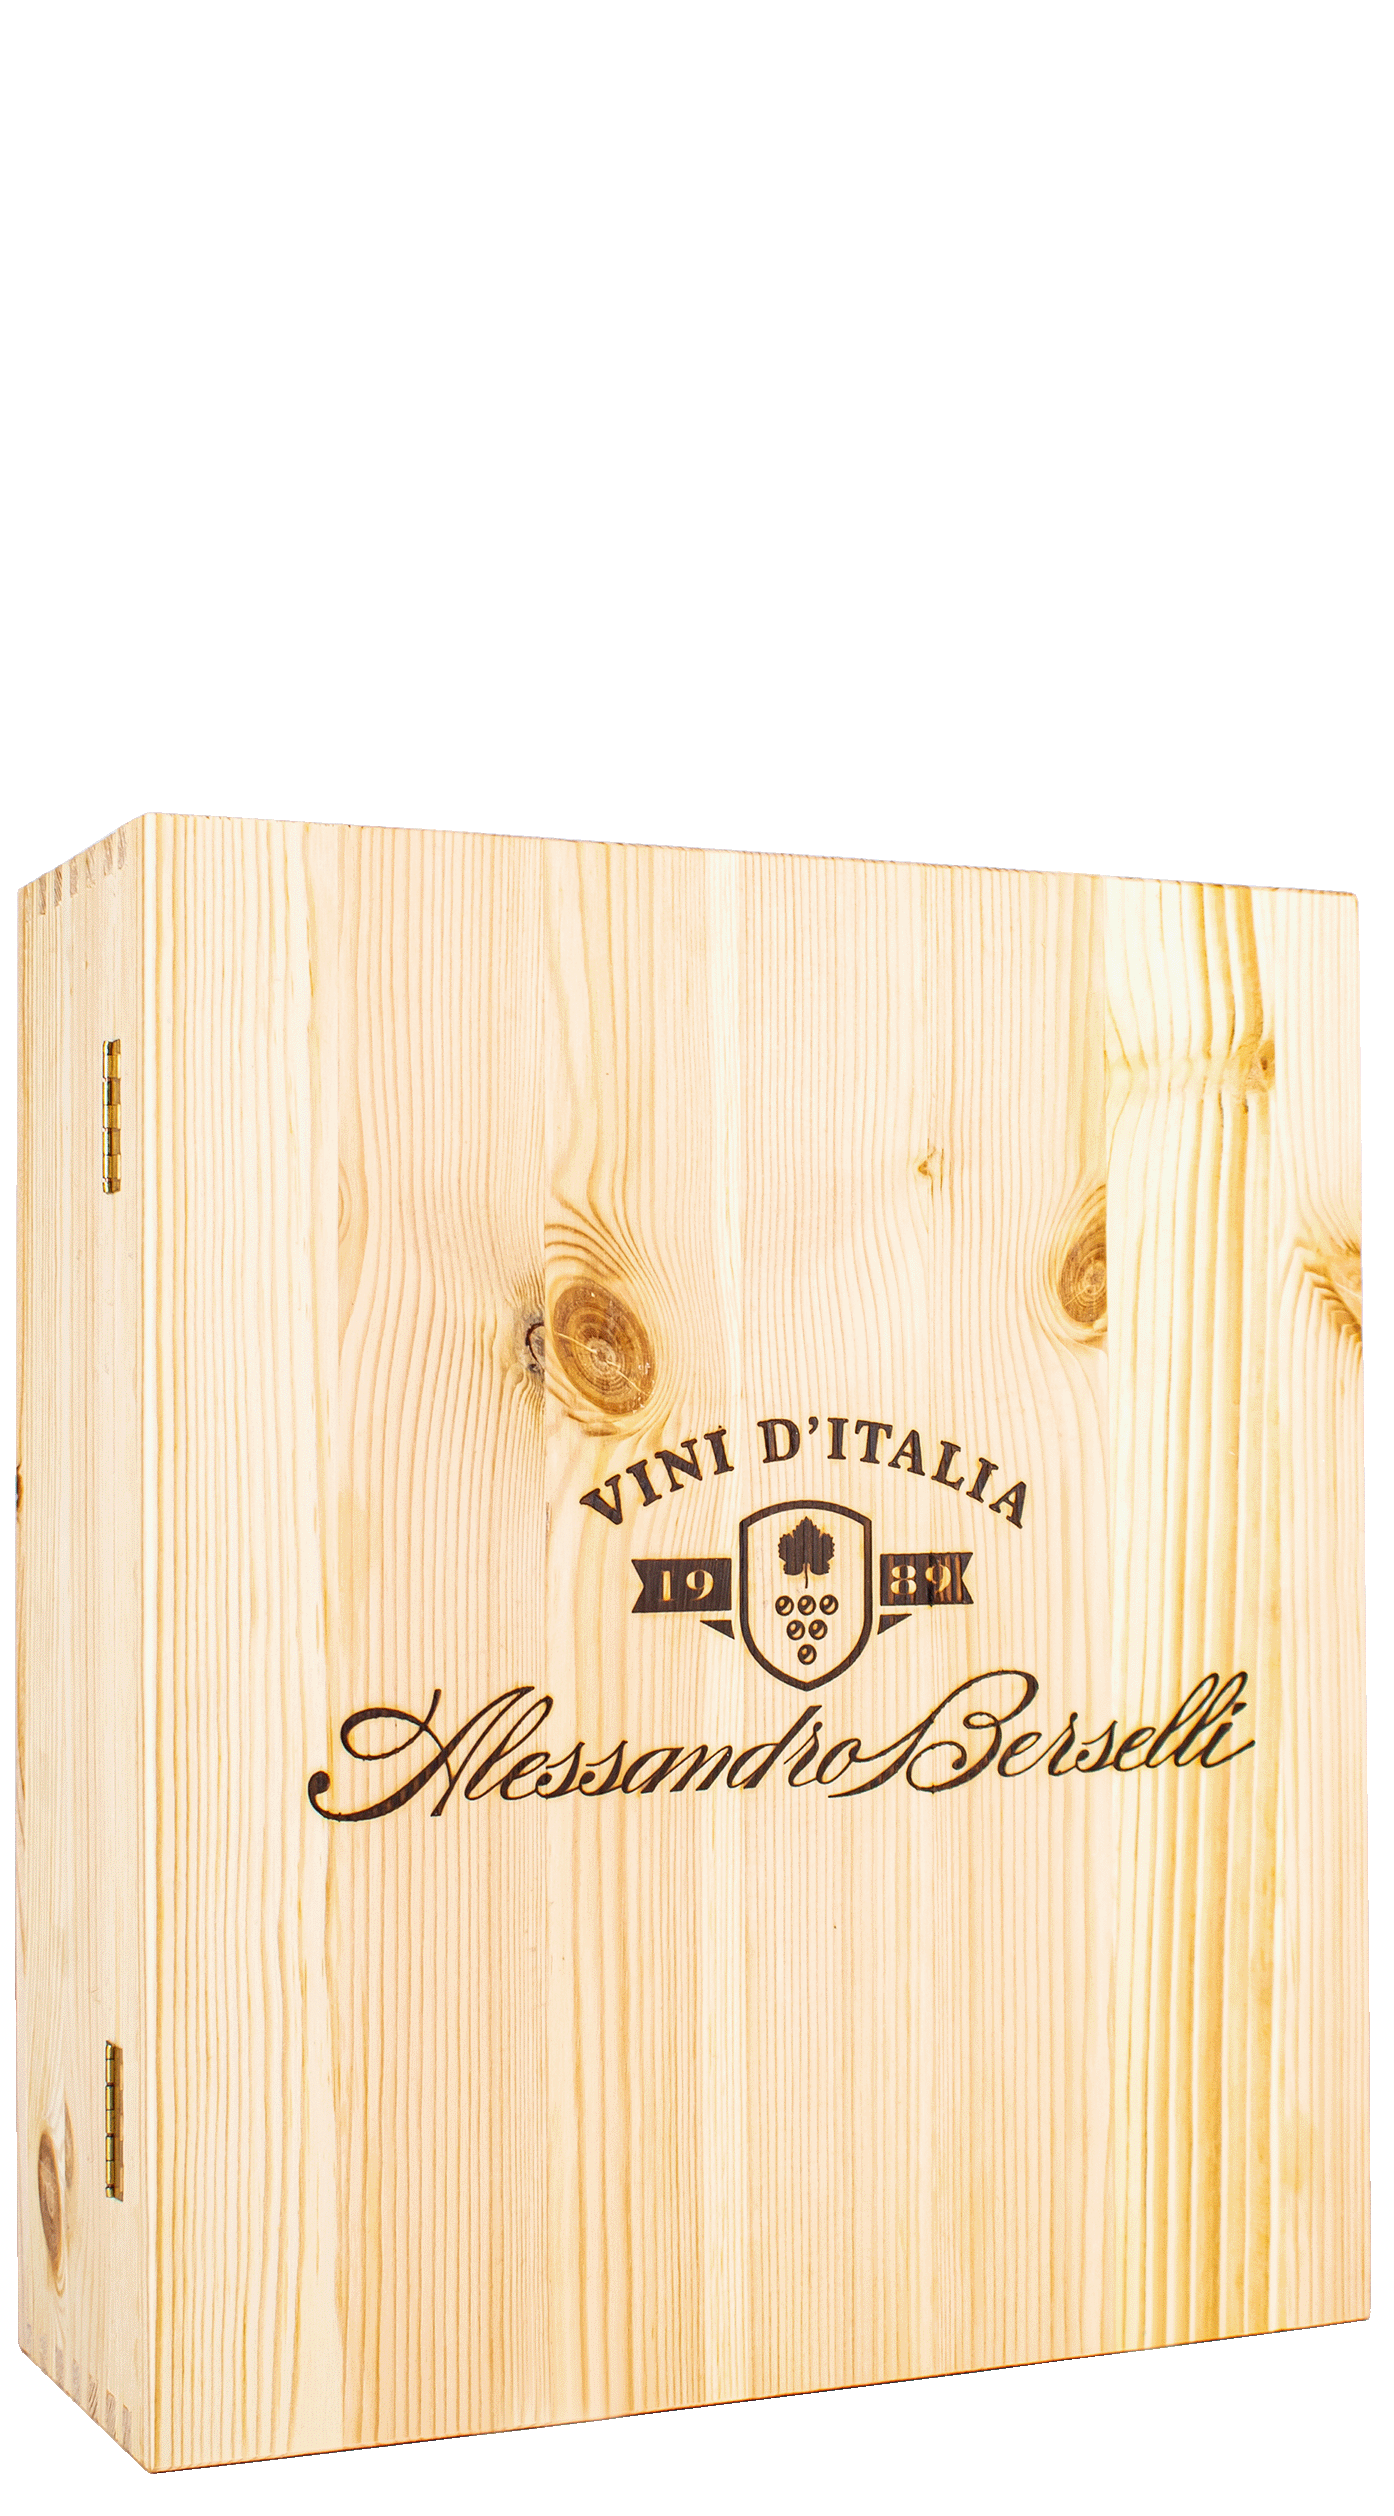 Wooden box Alessandro Berselli Vini d'Italia (3 bottles)